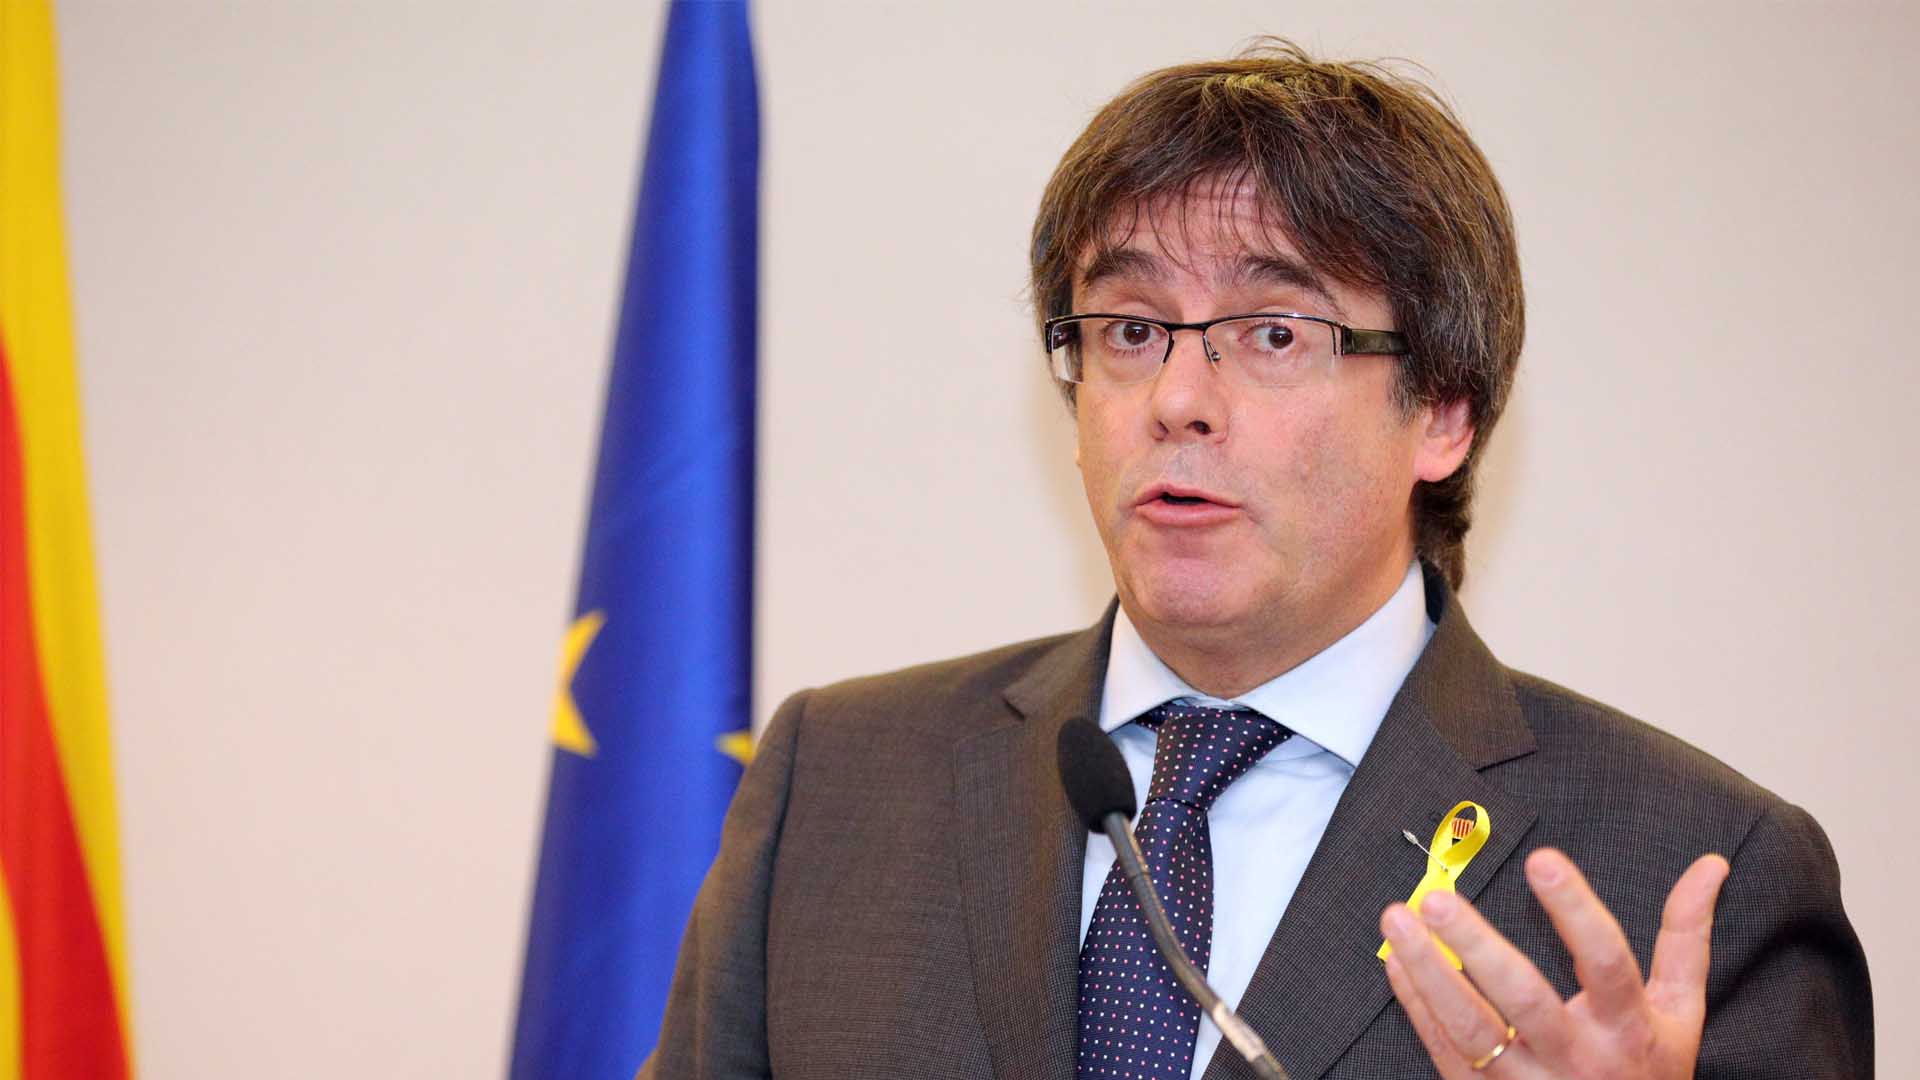 El Gobierno apremia al Parlament a buscar un presidente alternativo al "prófugo" Puigdemont